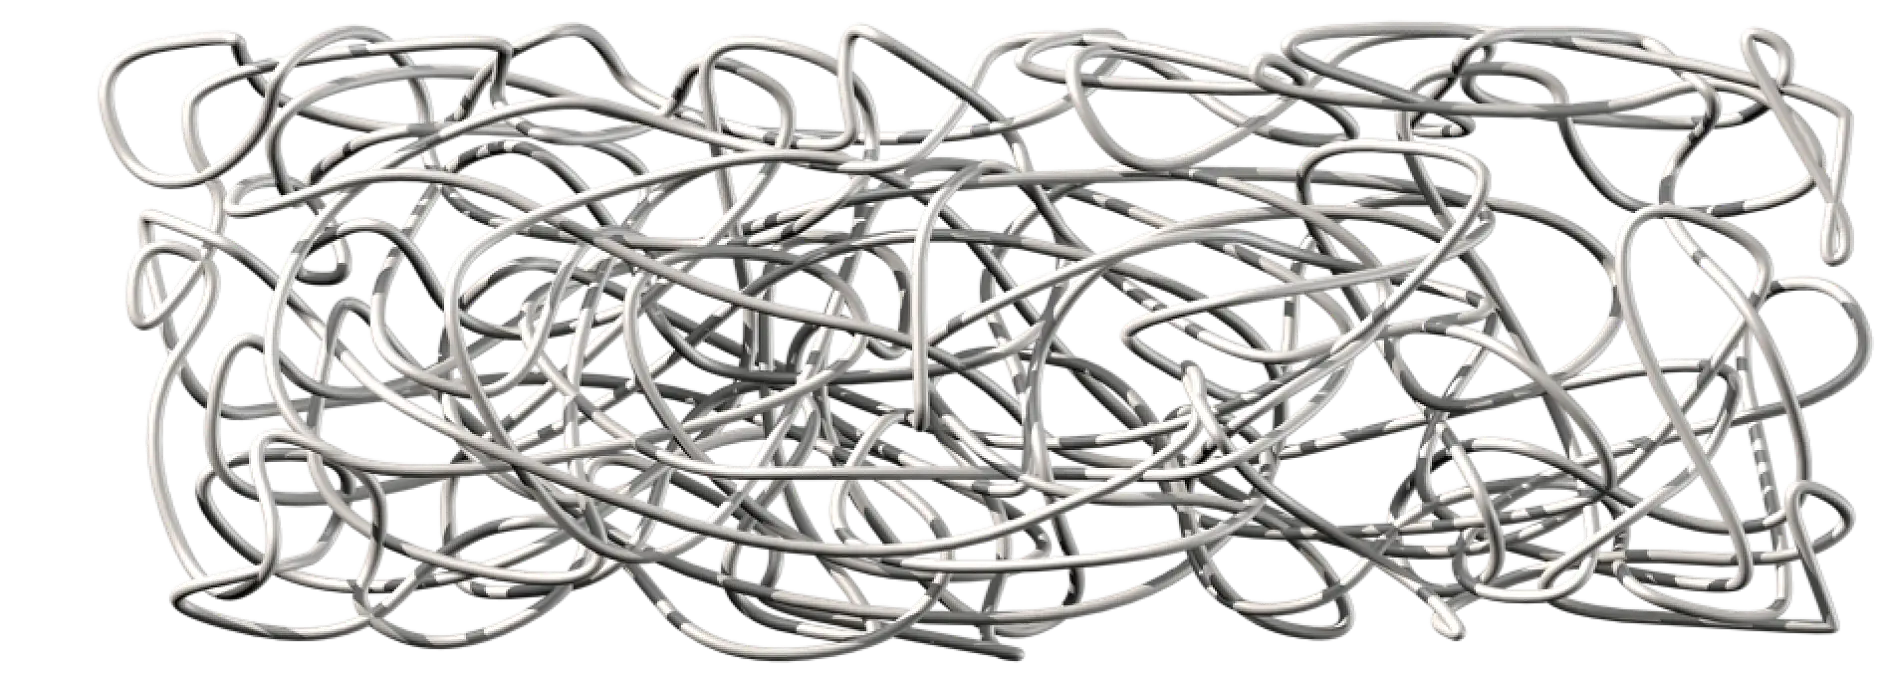 Le caoutchouc naturel est constitué de chaînes polymères extrêmement longues qui sont enchevêtrées et non réticulées